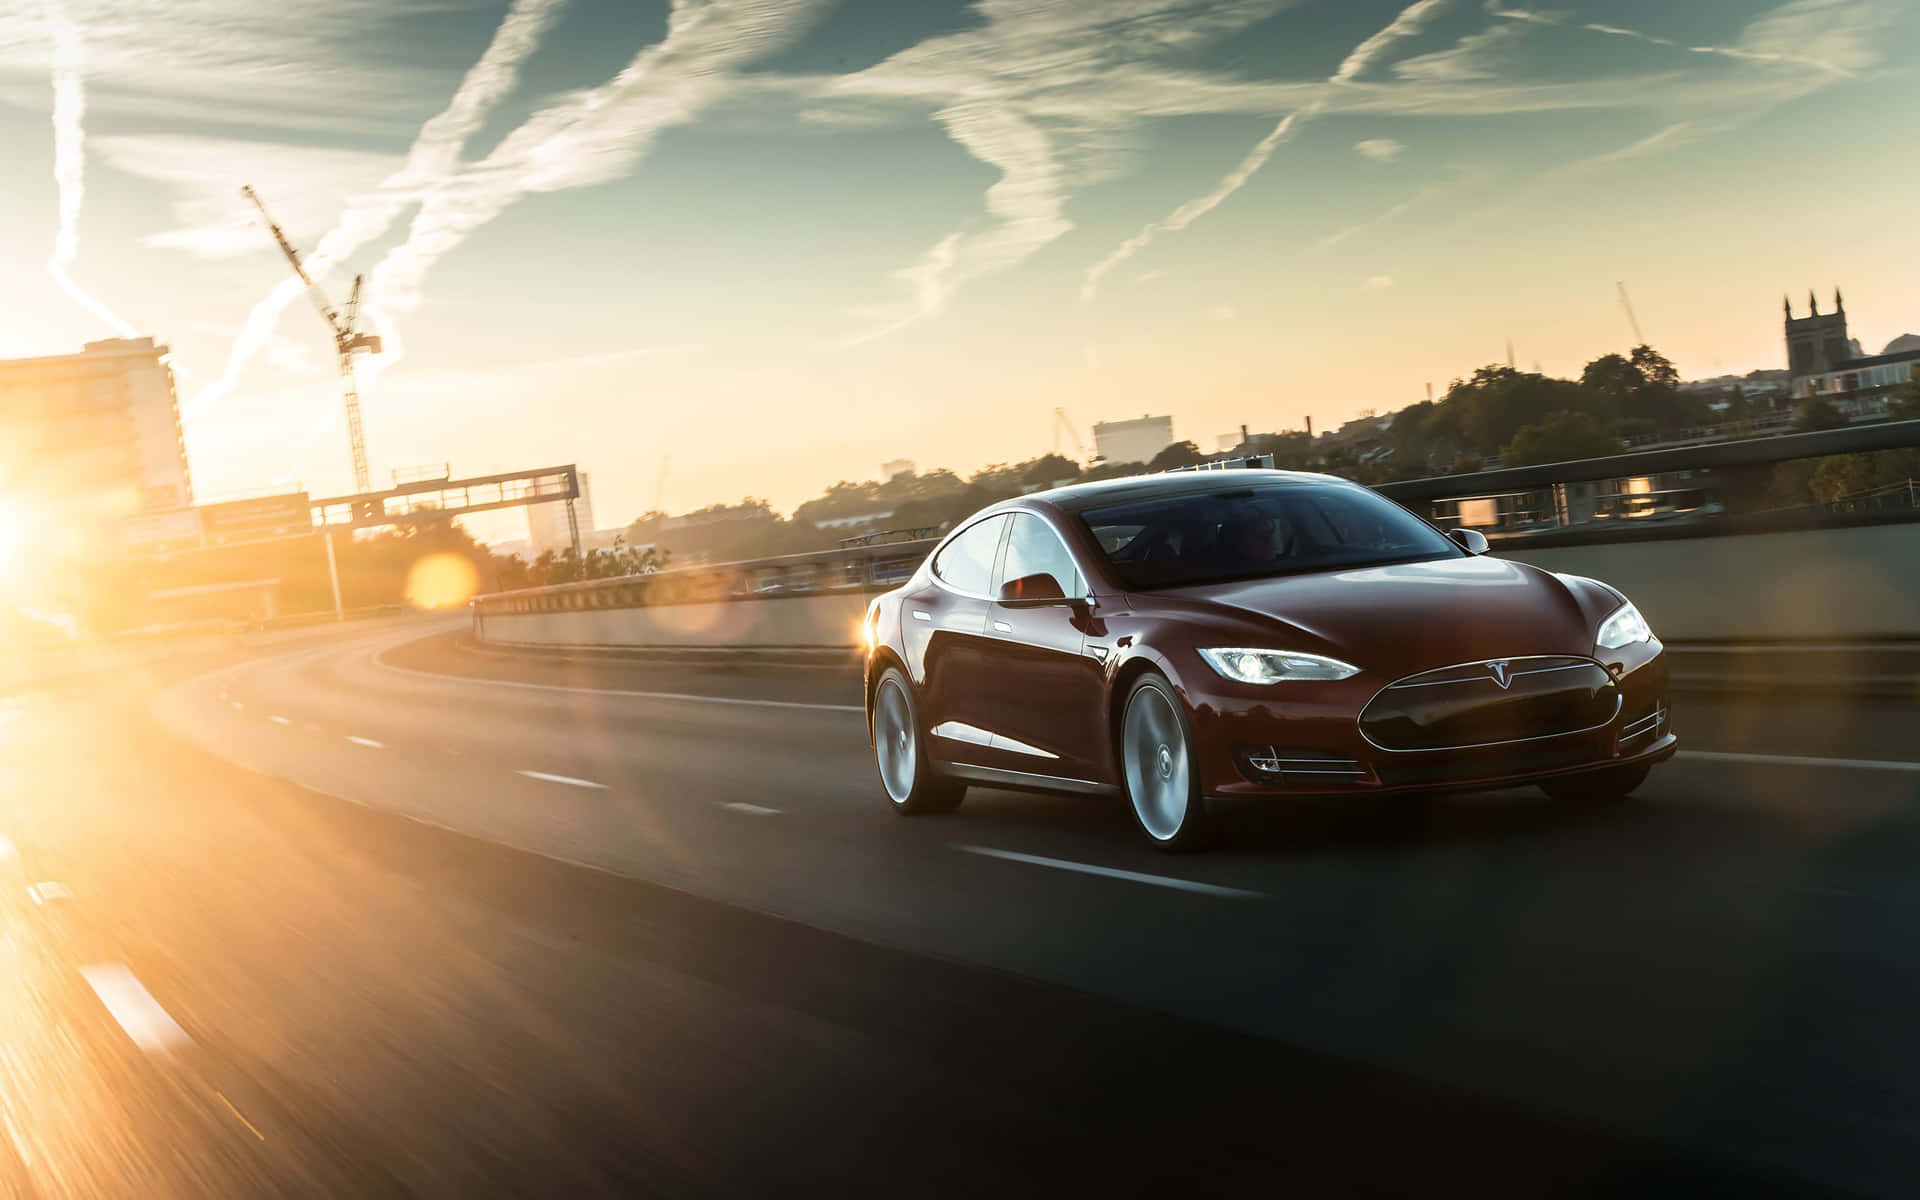 Live-tapet af billedet af en Tesla-bil på vejen